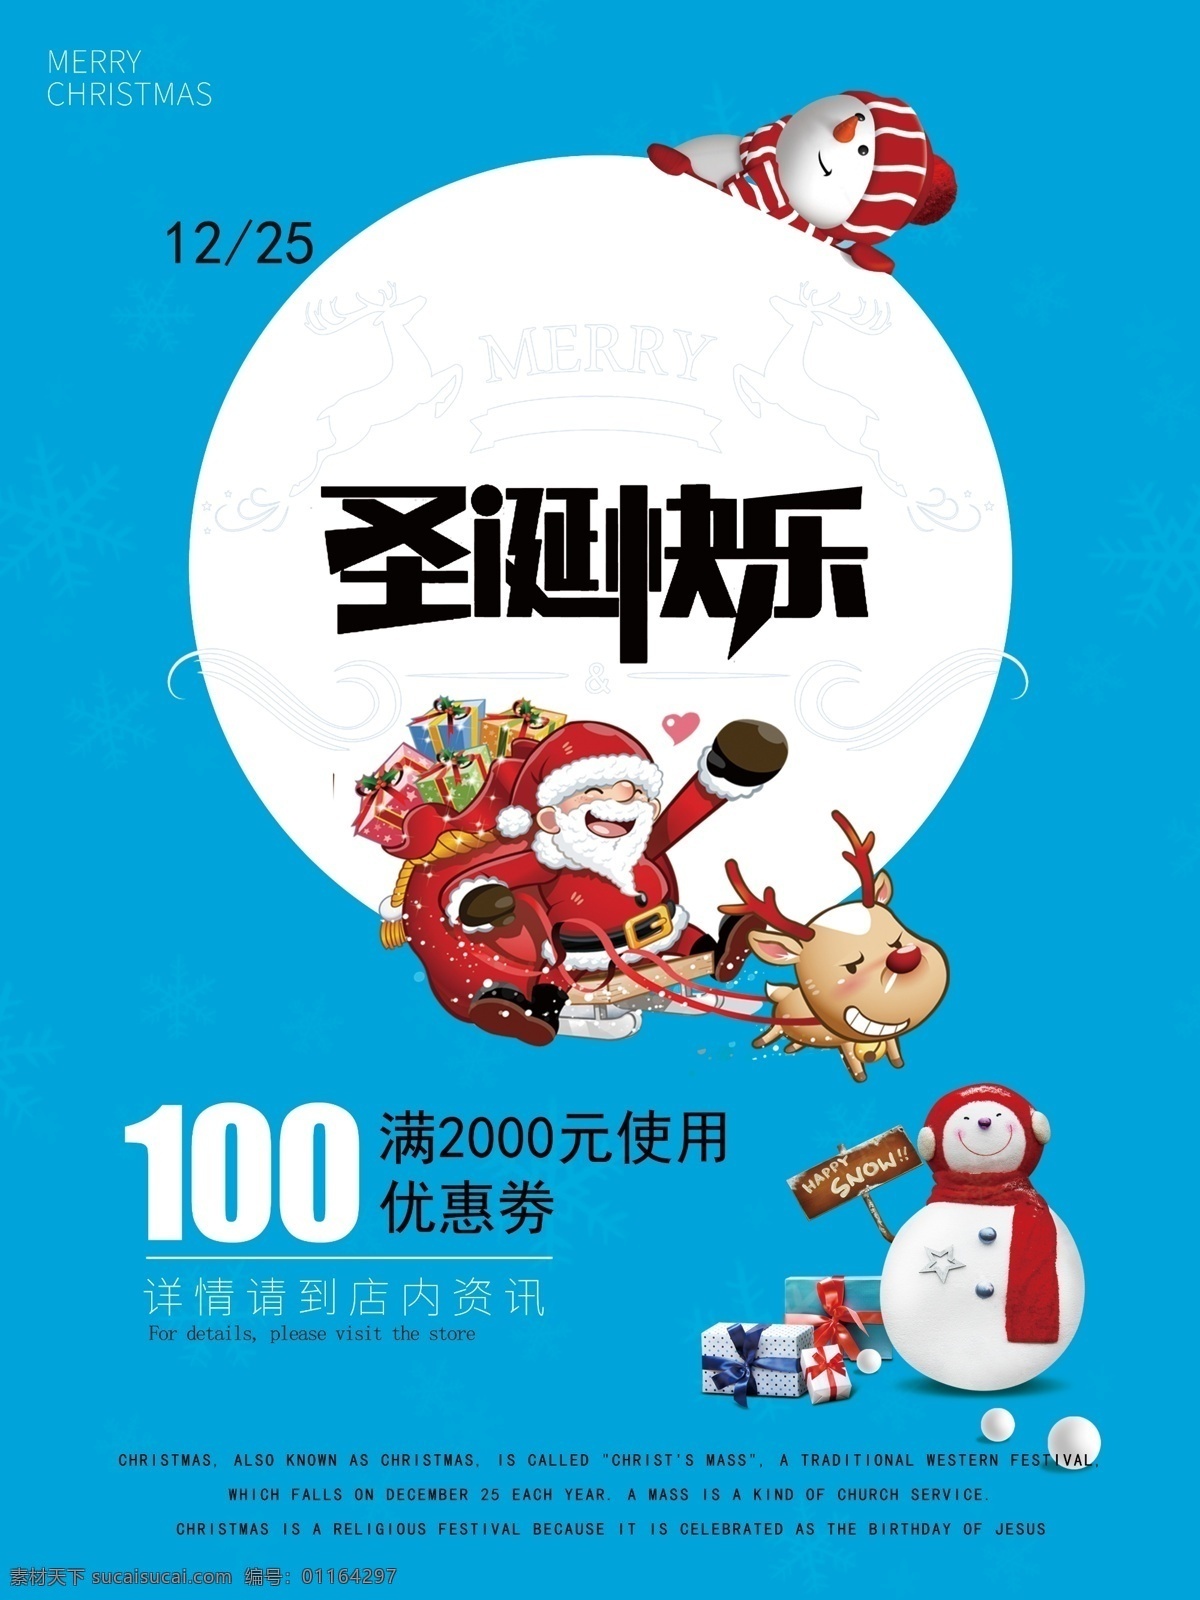 圣诞 促销 海报 广告 麋鹿 圣诞促销海报 圣诞广告 圣诞节 圣诞老人 雪人